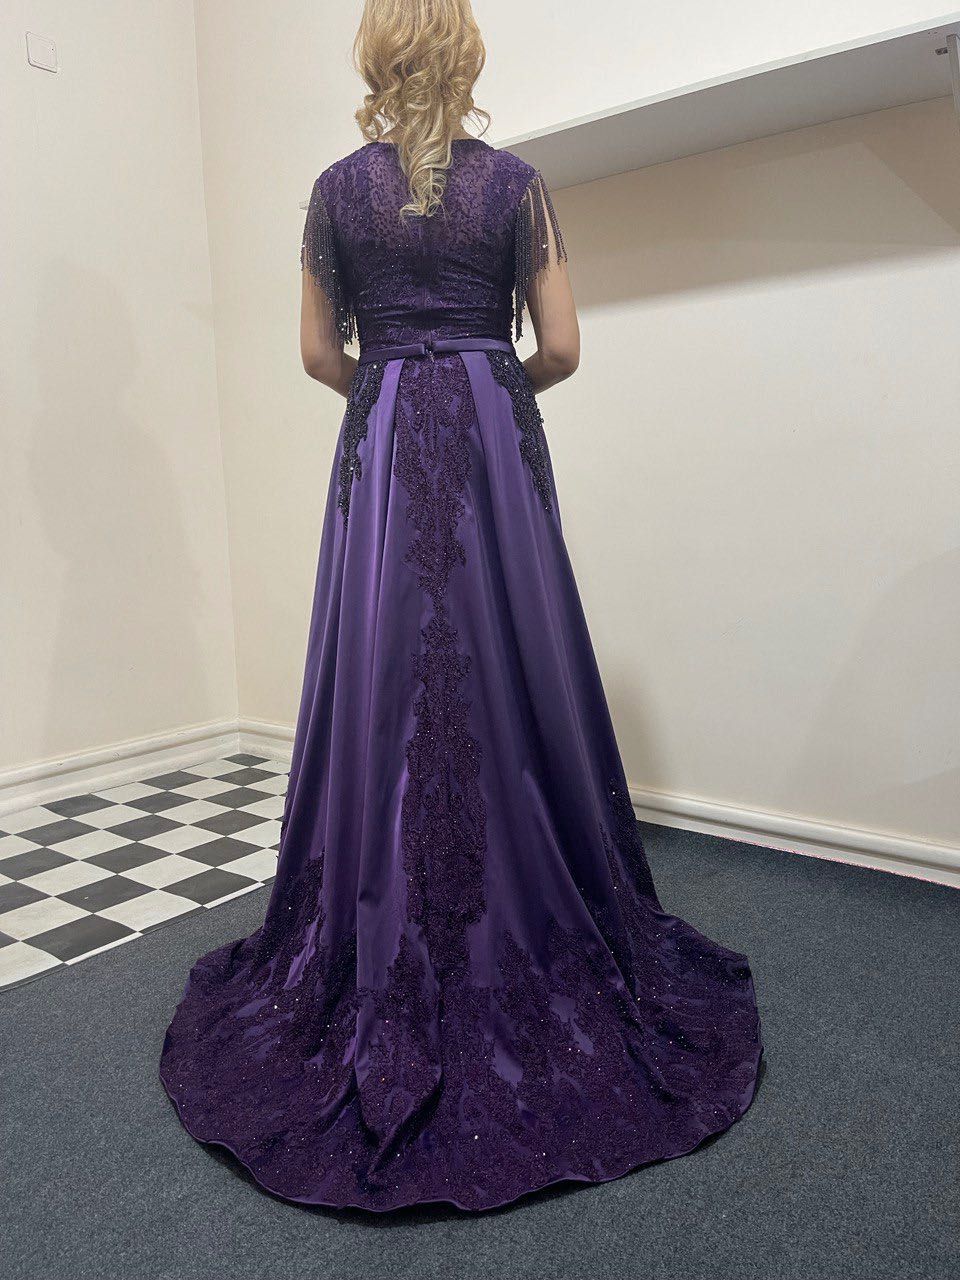 Вечернее платье 42размер (Турция)  фиолетового цвета